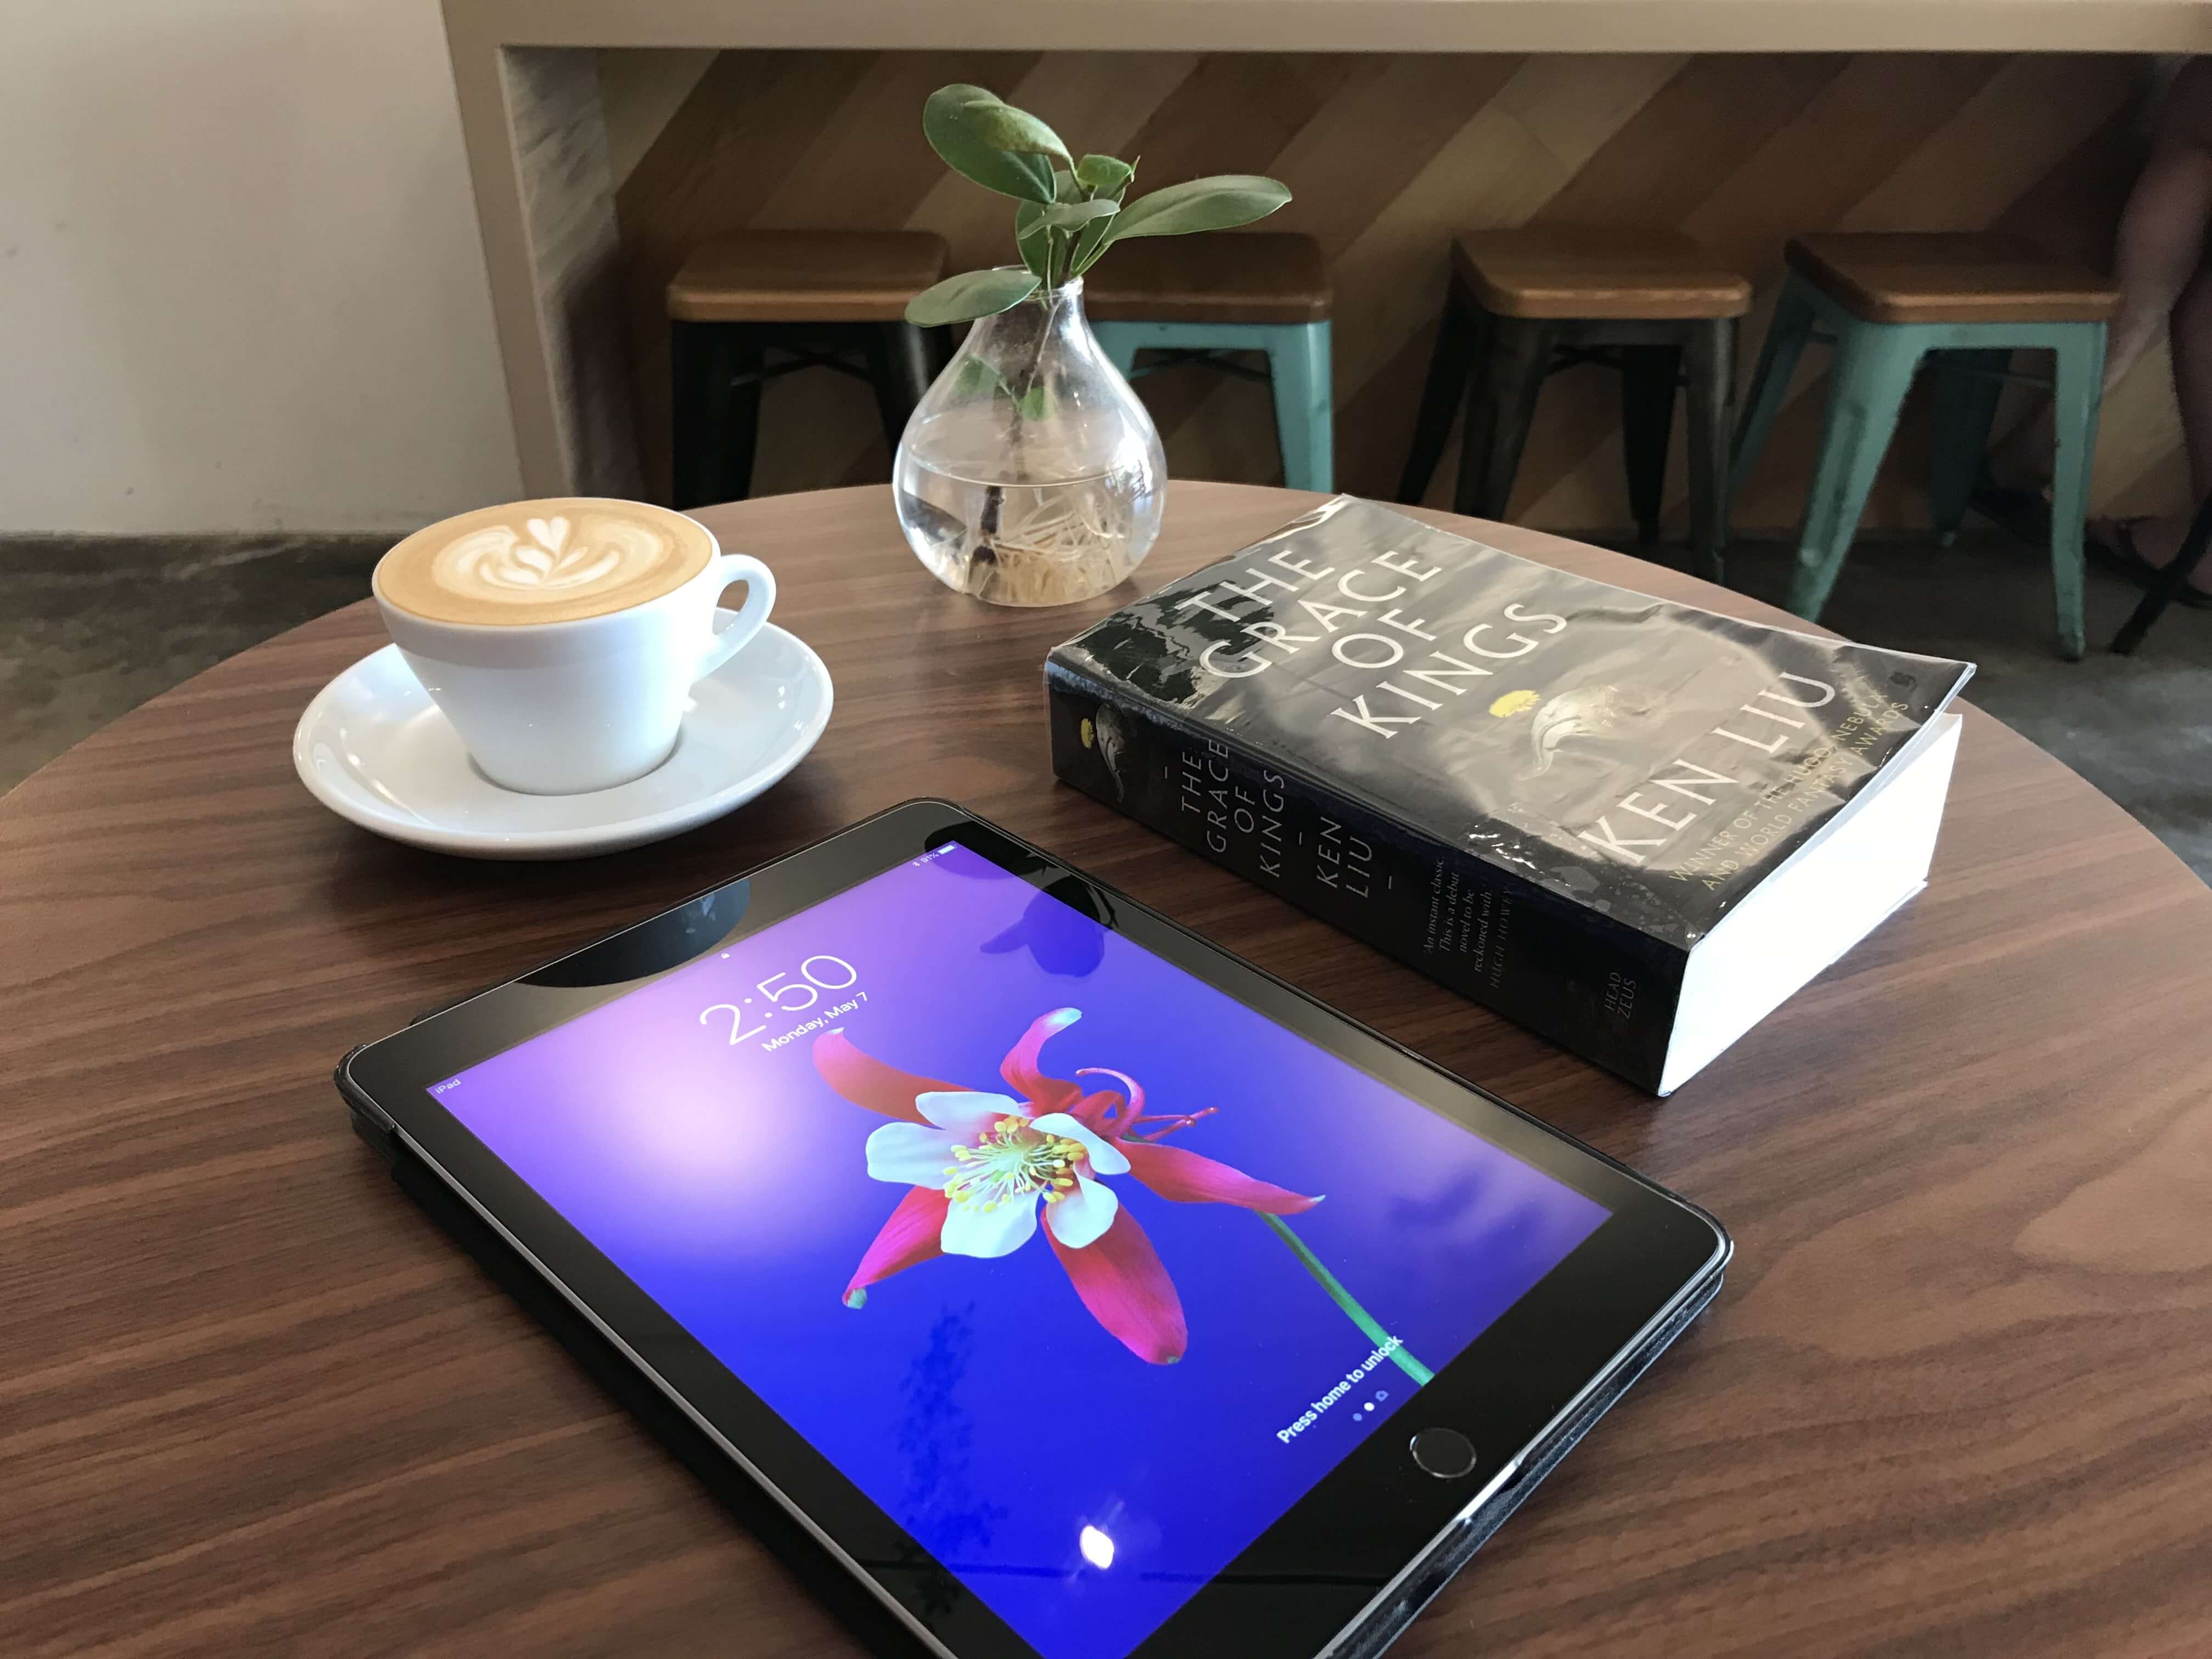 A novel and iPad on a cafe table